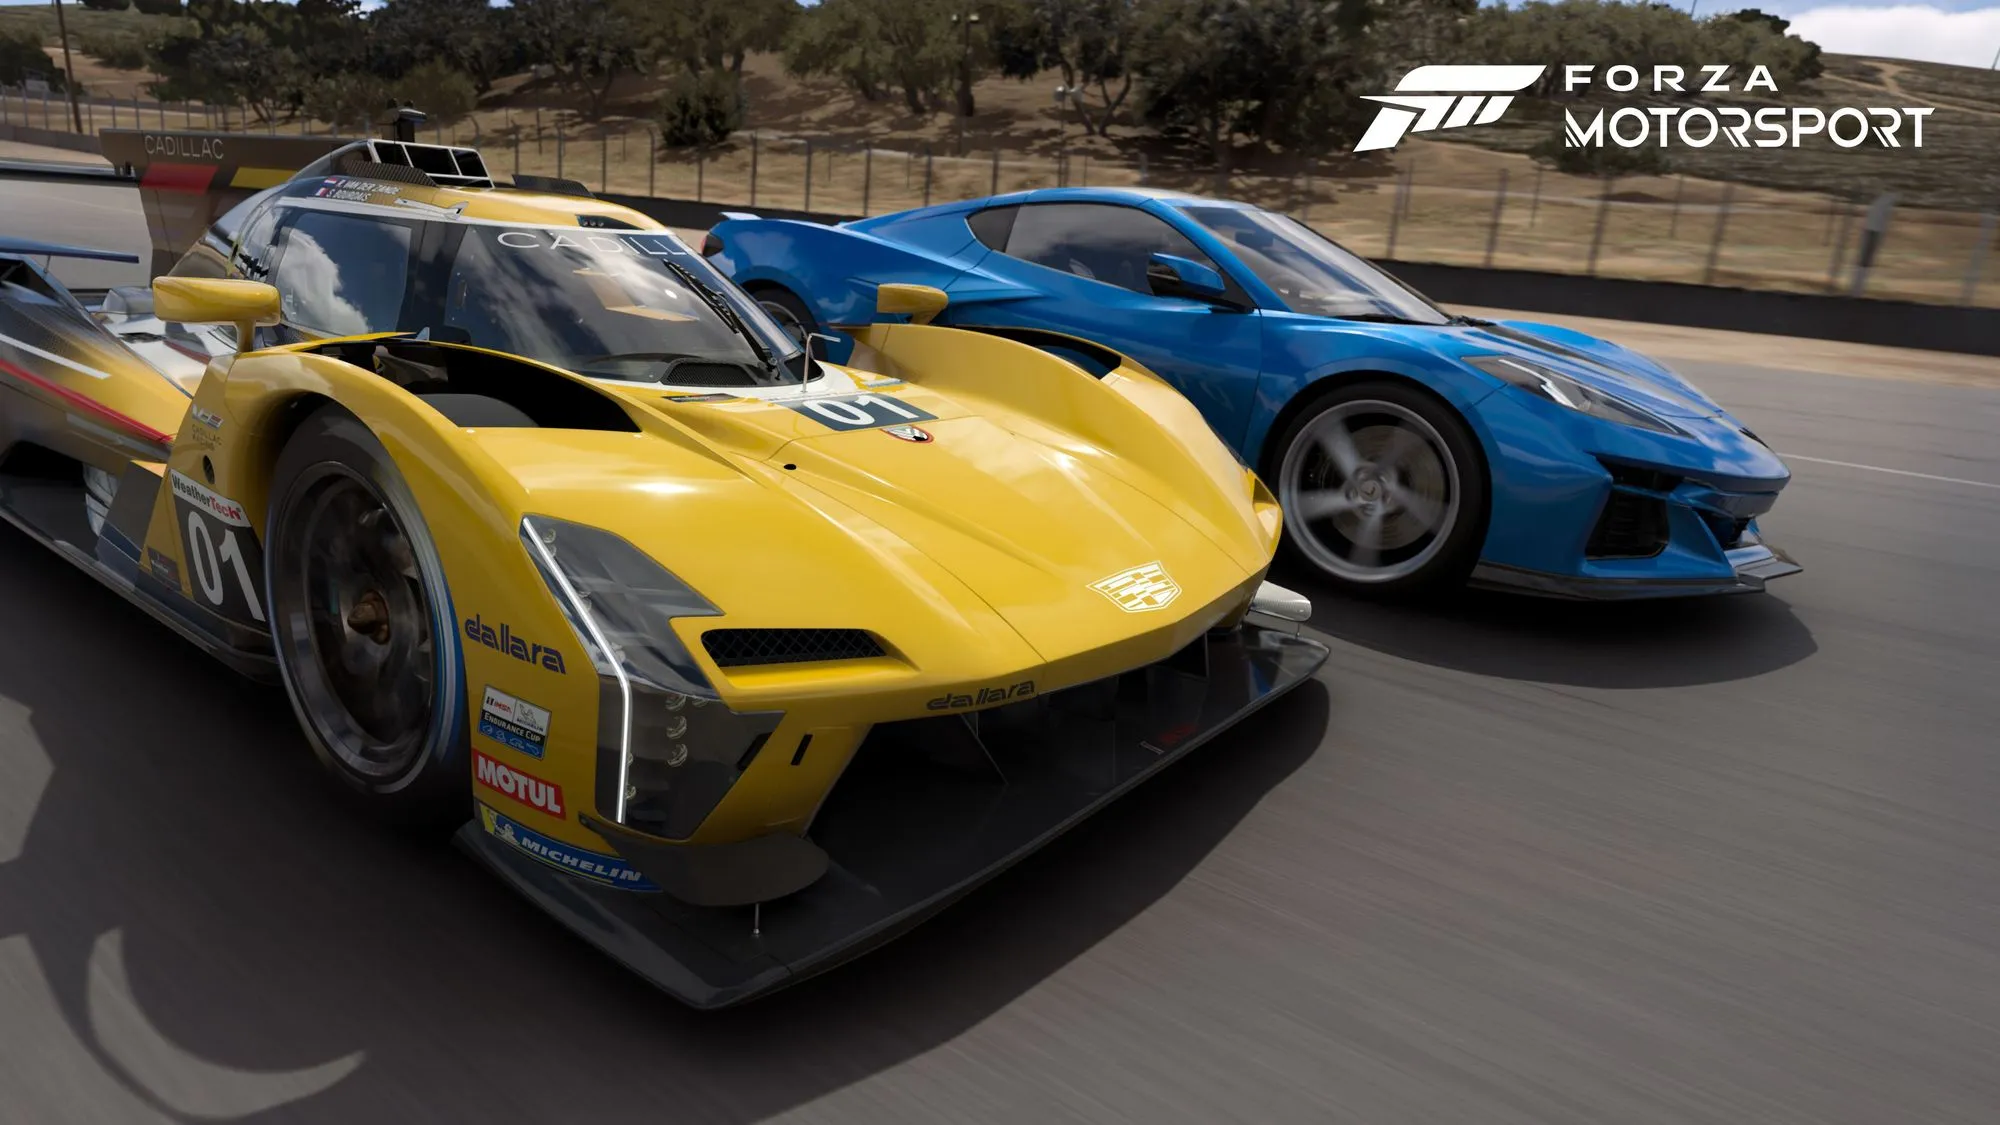 massive_Forza_Motorsport_Cover_Cars_01_1